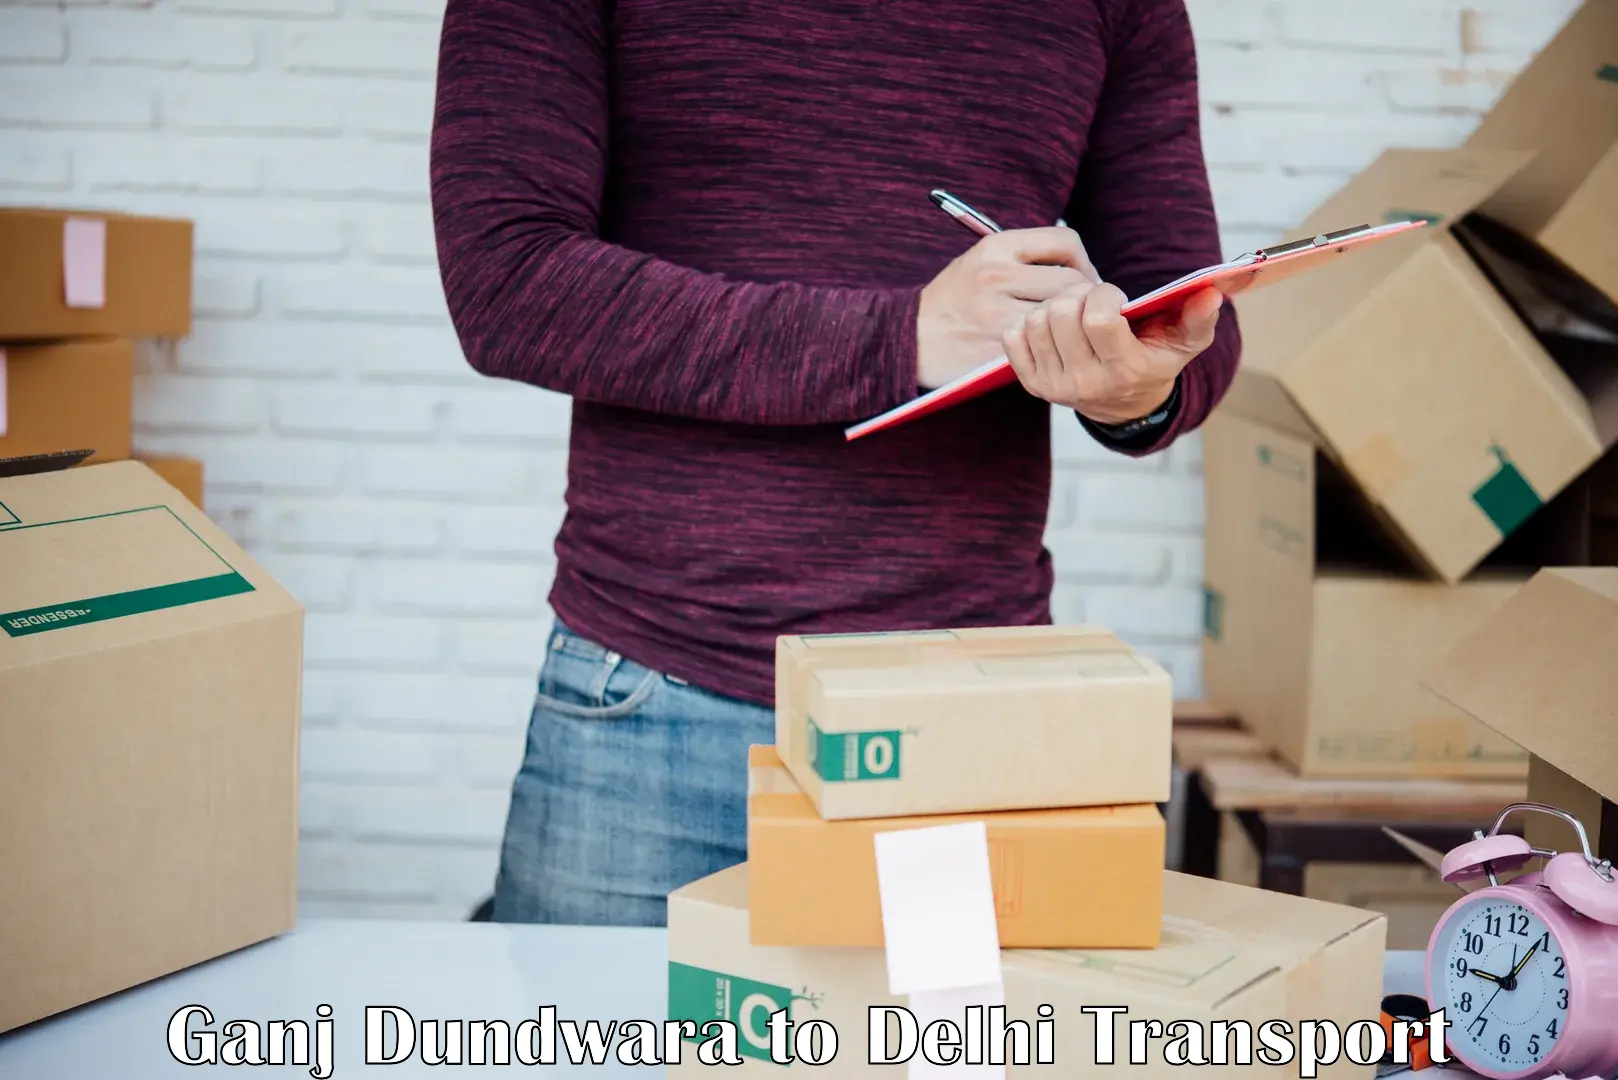 Material transport services Ganj Dundwara to Sansad Marg